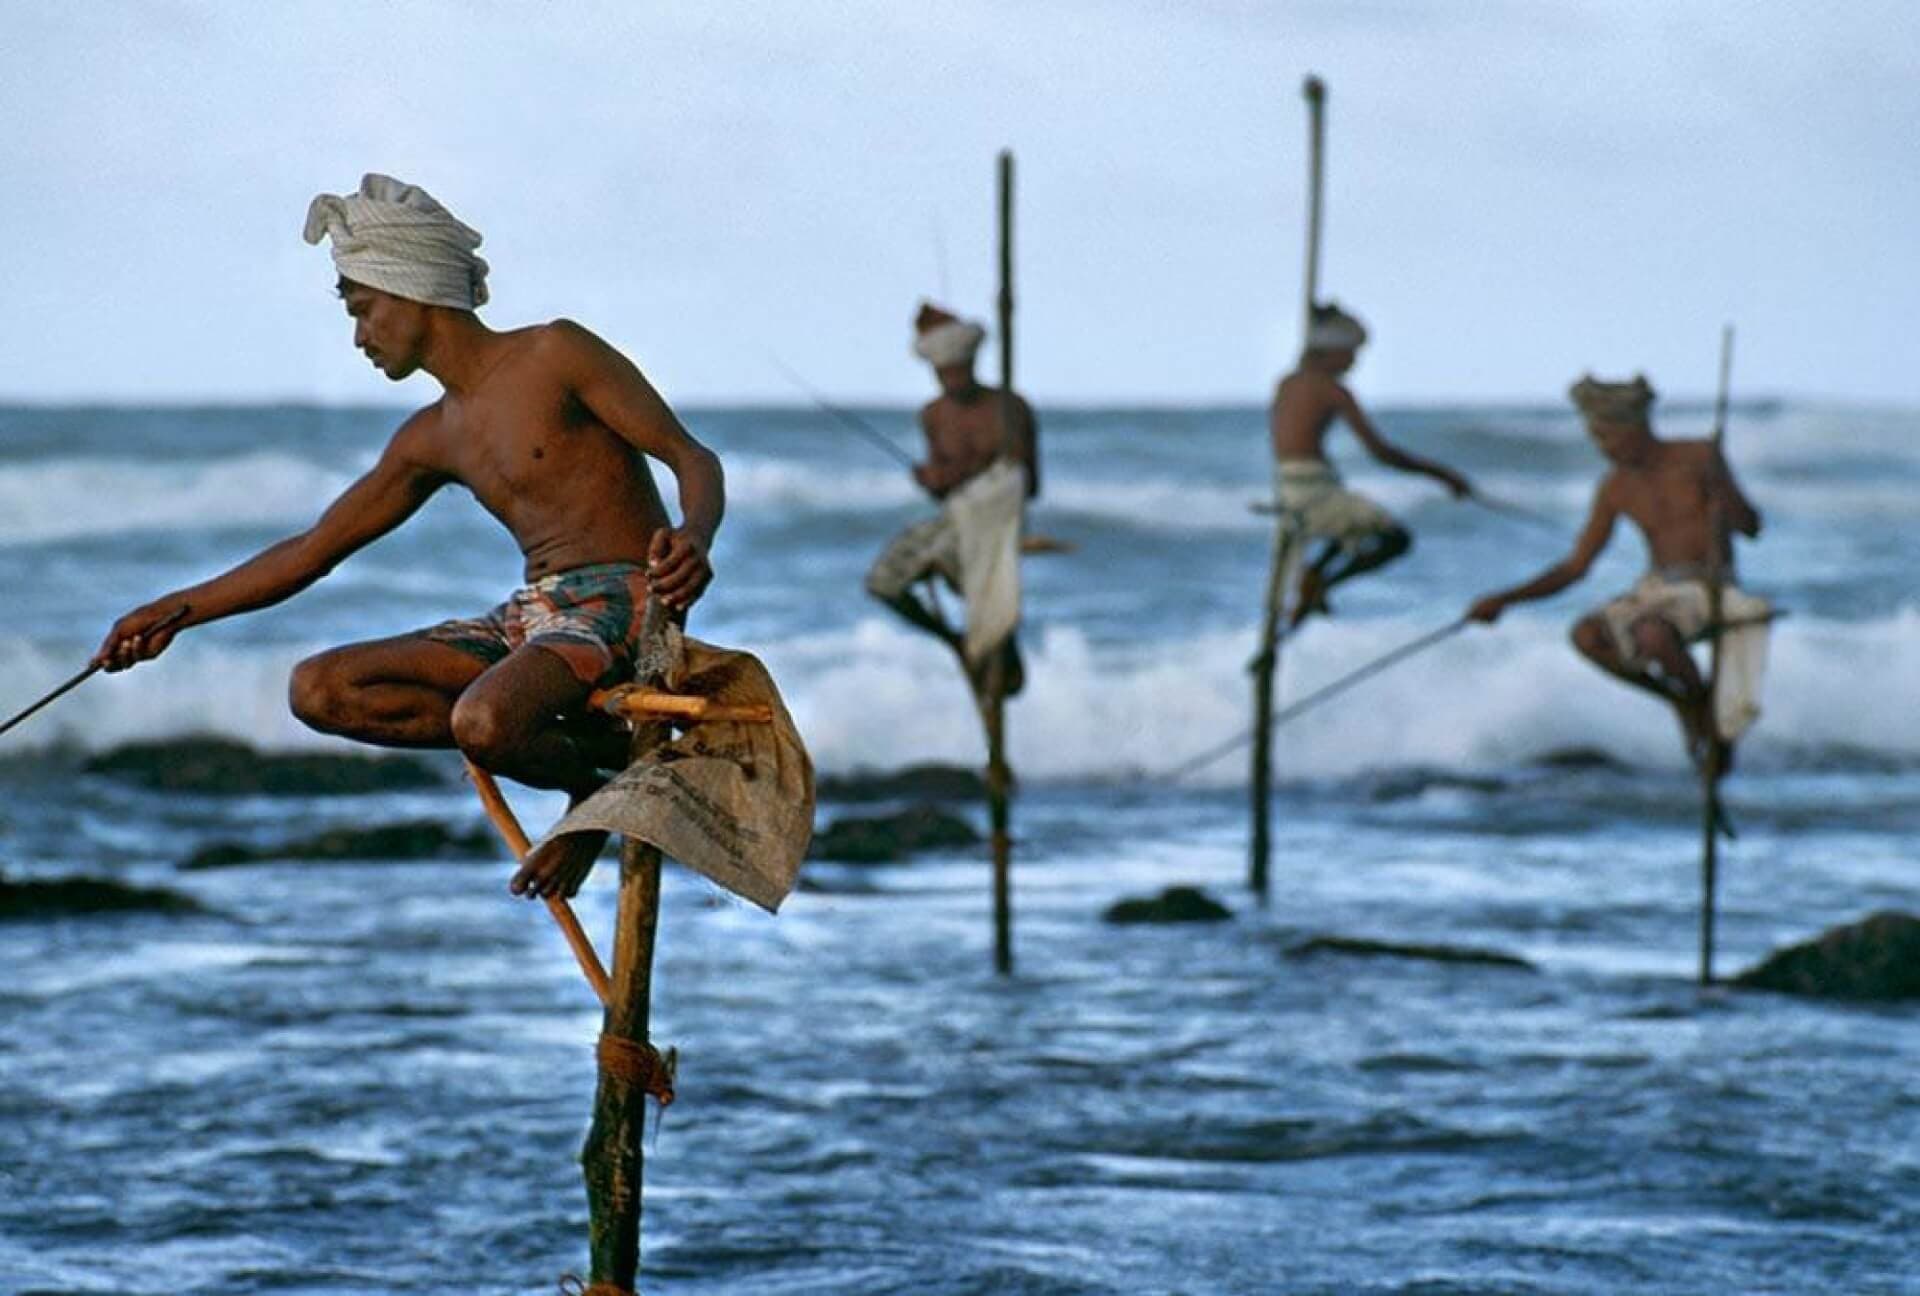 高跷捕鱼是斯里兰卡南部海岸独特的捕鱼方式